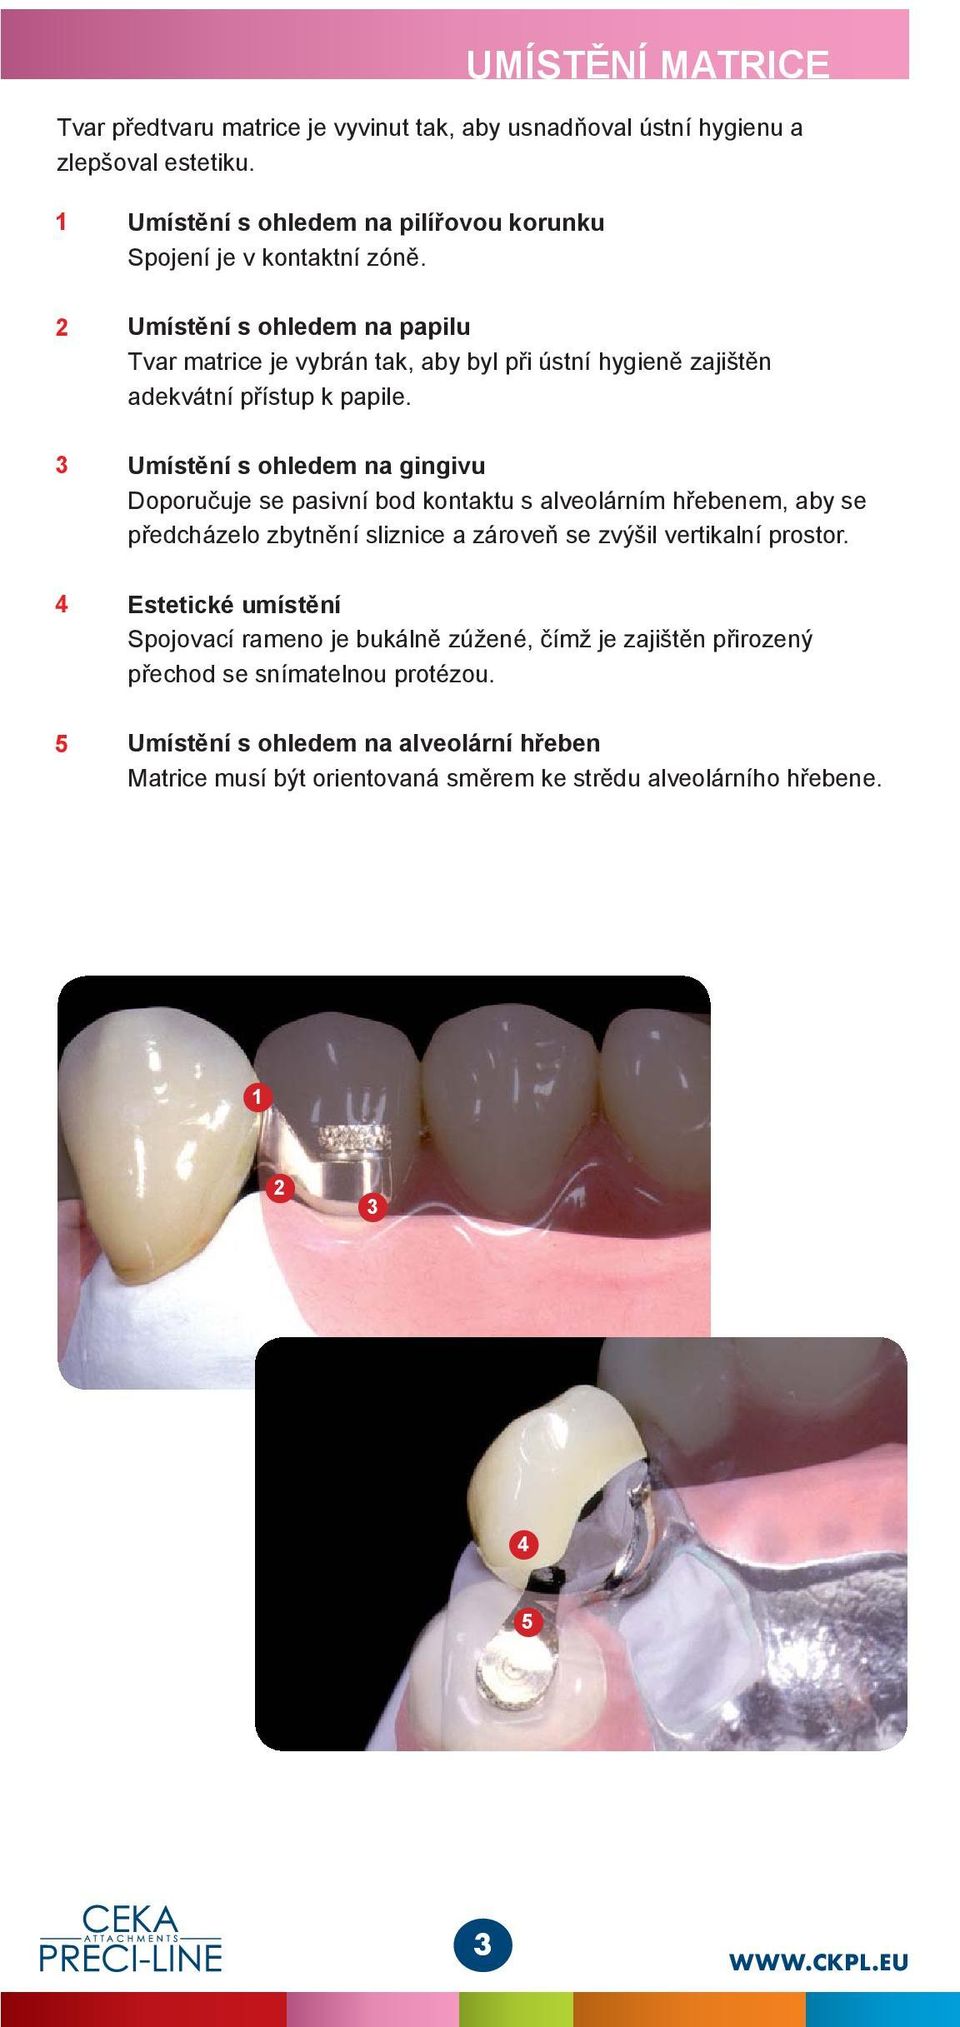 Umístění s ohledem na papilu Tvar matrice je vybrán tak, aby byl při ústní hygieně zajištěn adekvátní přístup k papile.